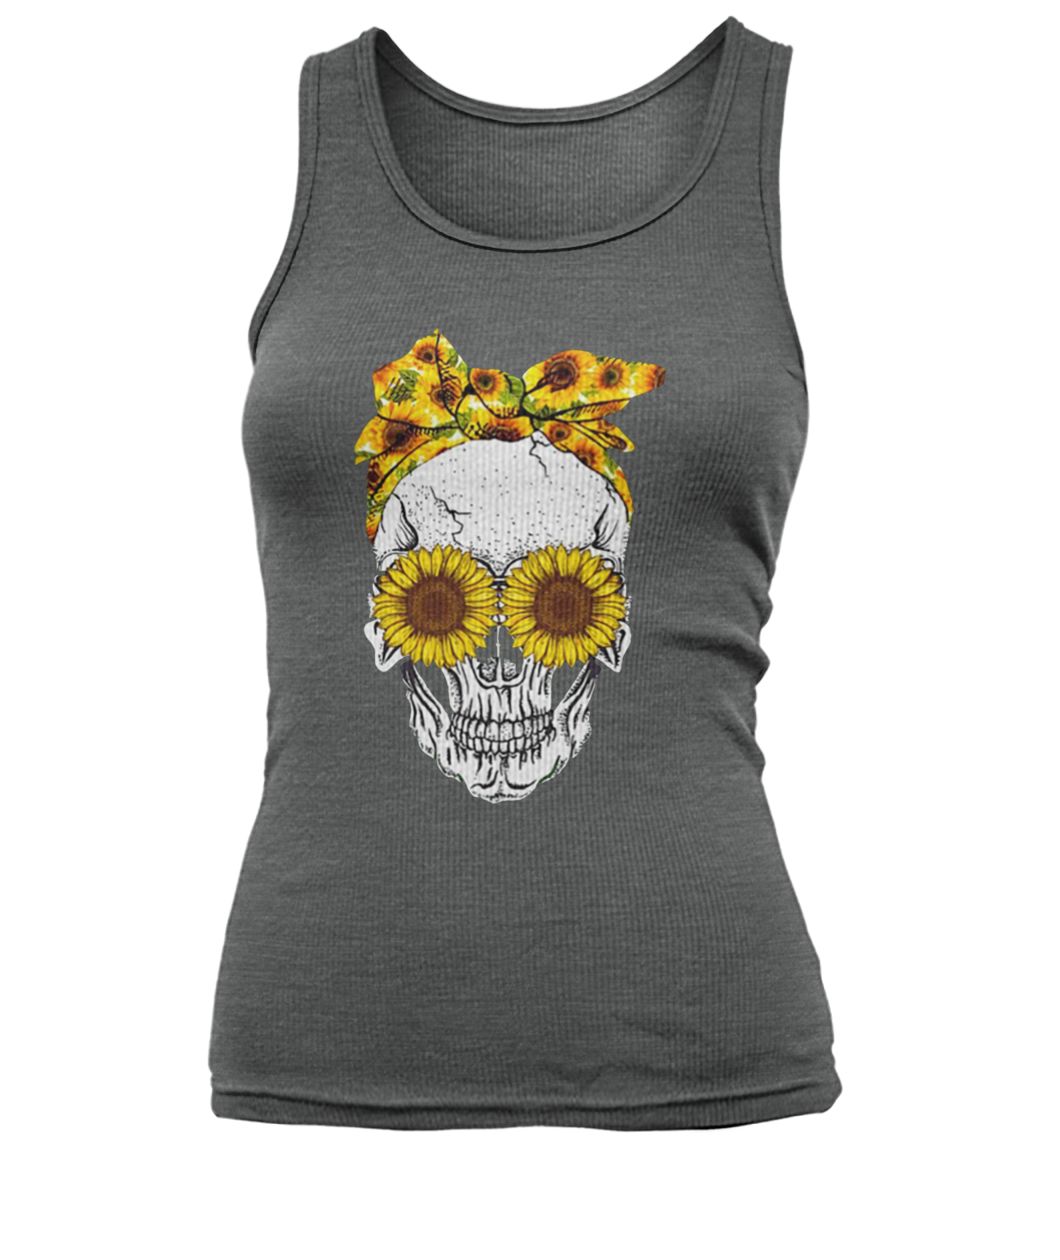 Sunflower skull women's tank top